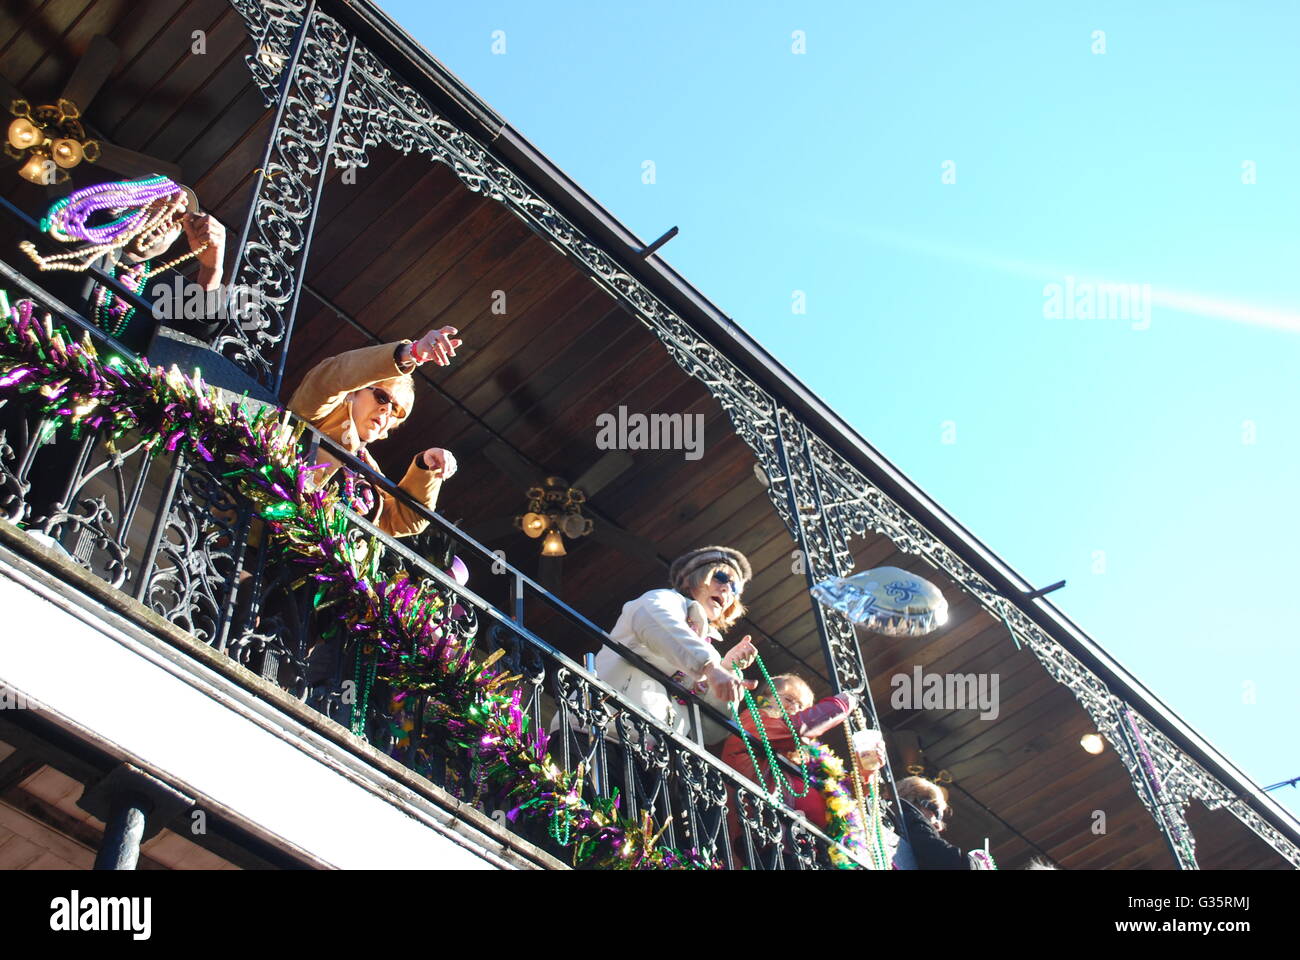 Fastnacht Jecken Om Bourbon St. New Orleans Louisiana USA Perlen vom Balkon zu werfen Stockfoto